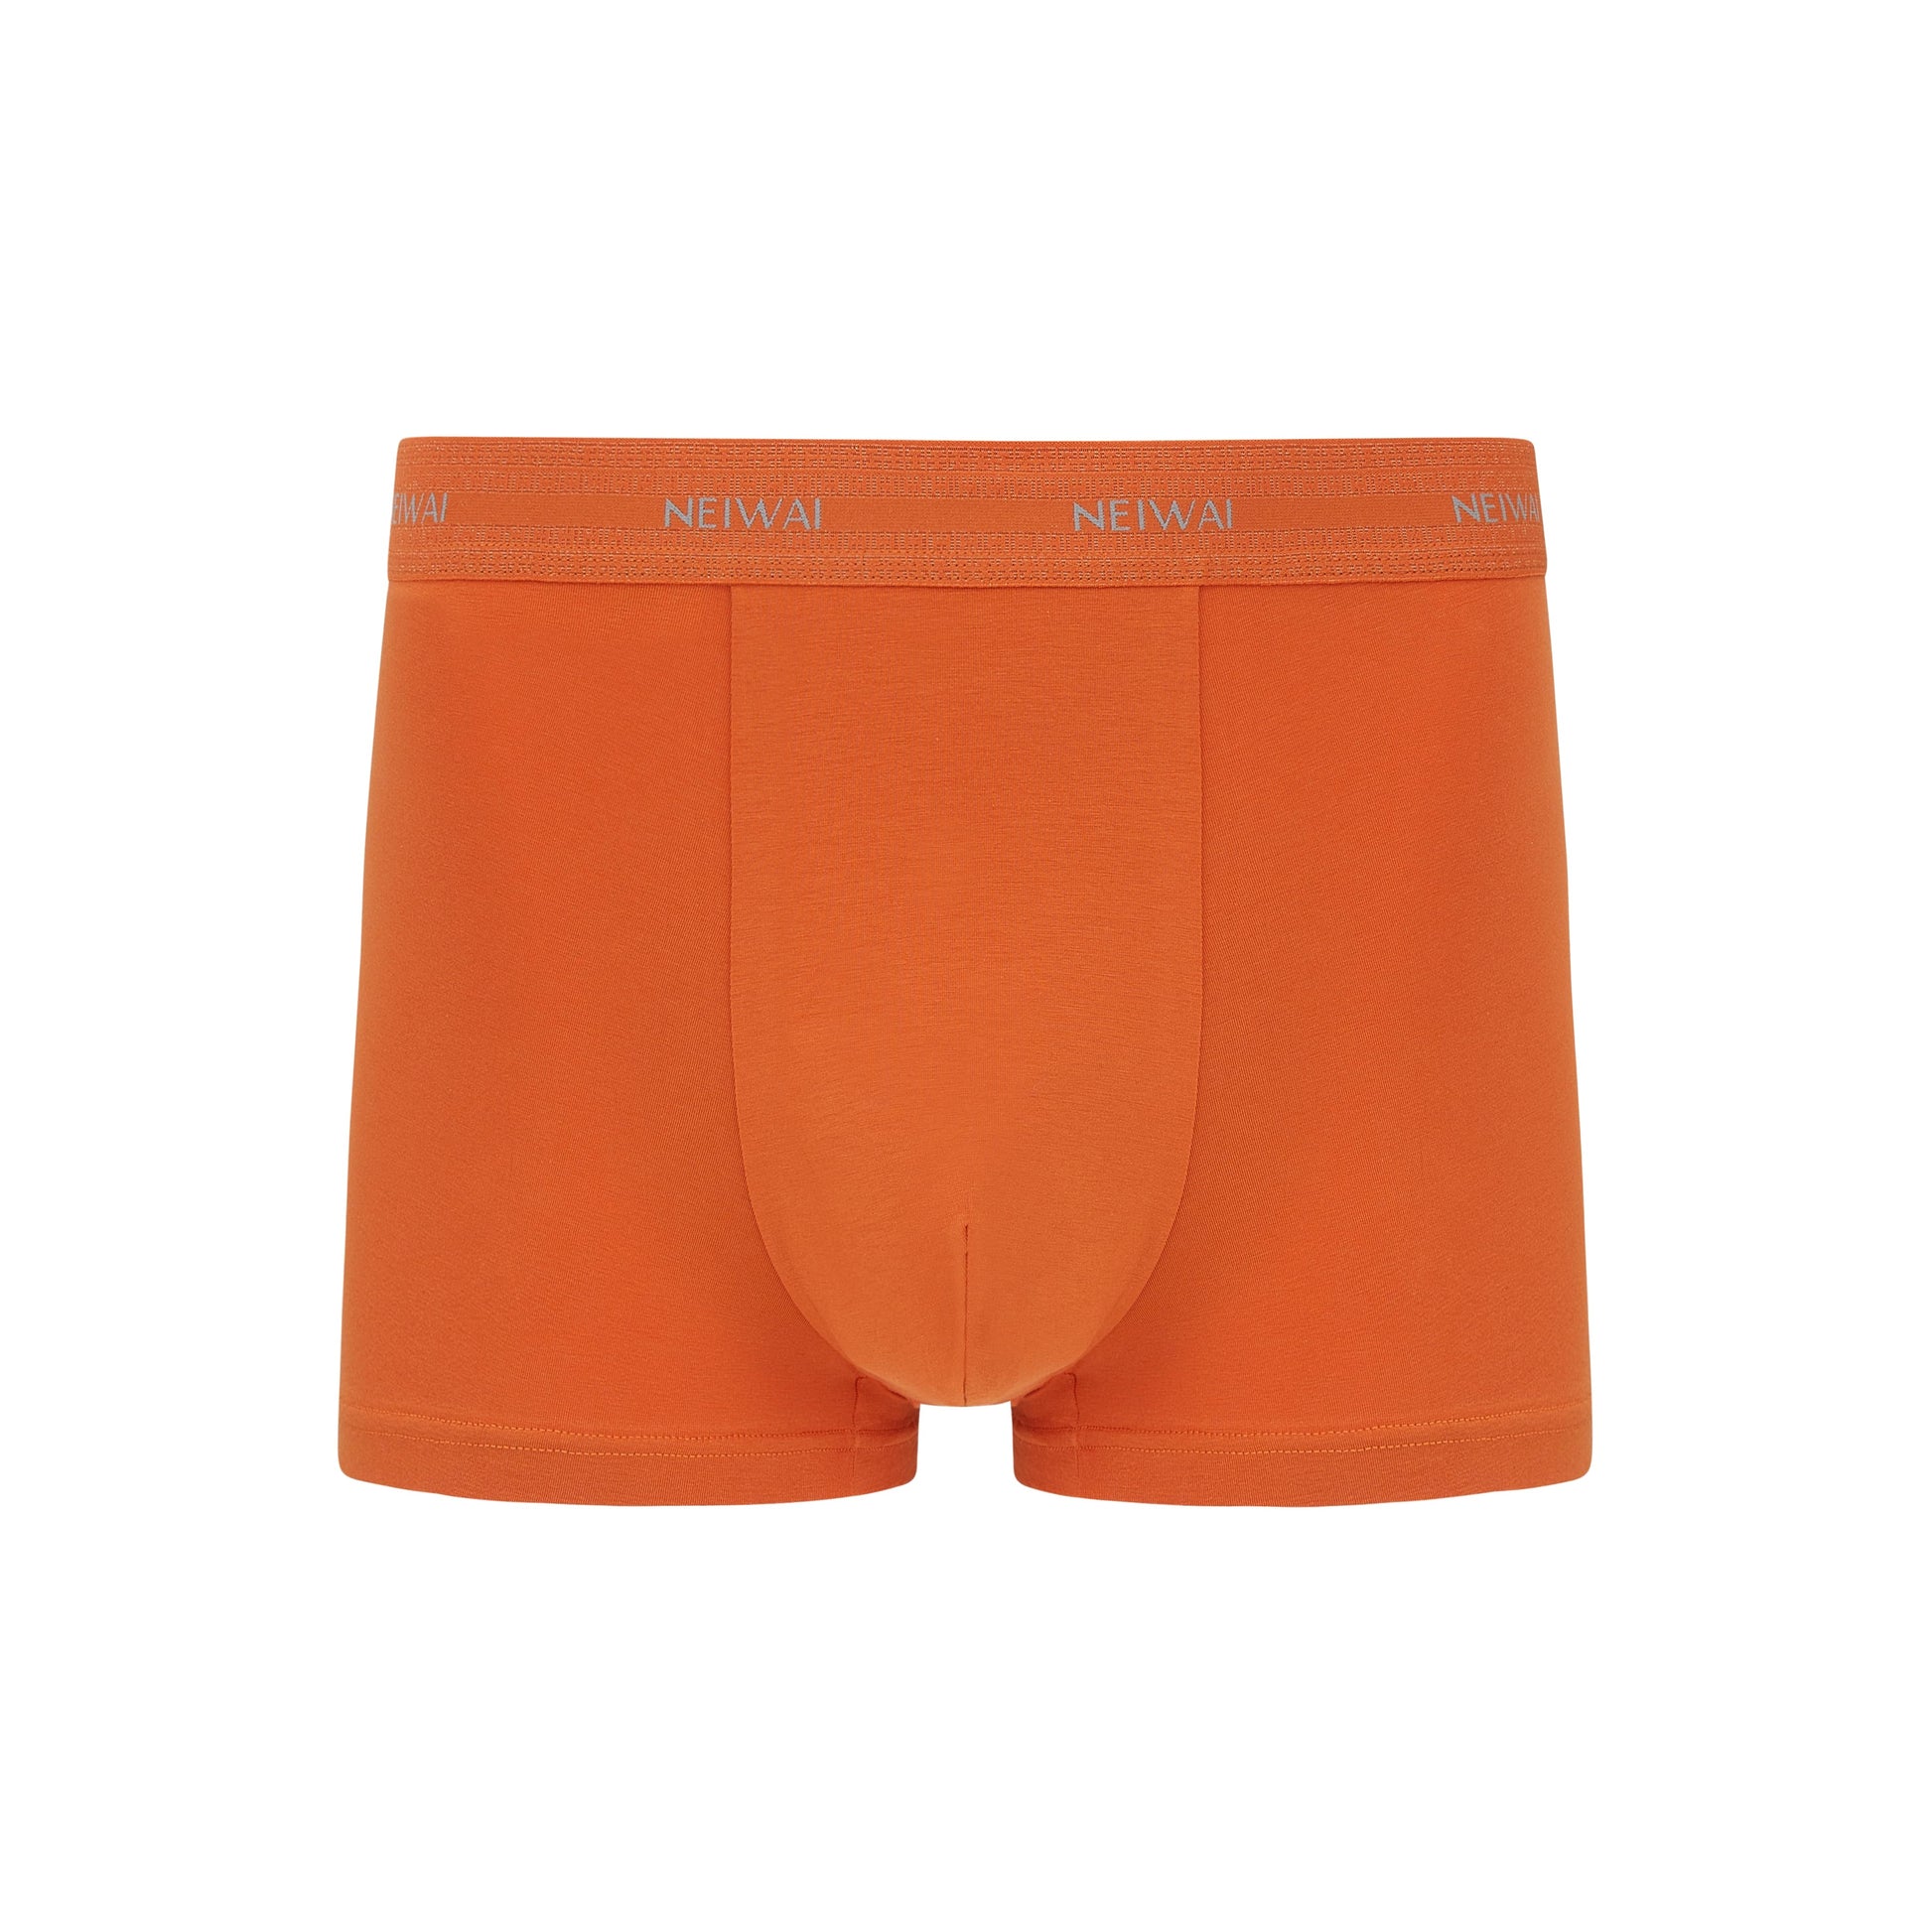 Men’s Cotton Boxer Brief in orange